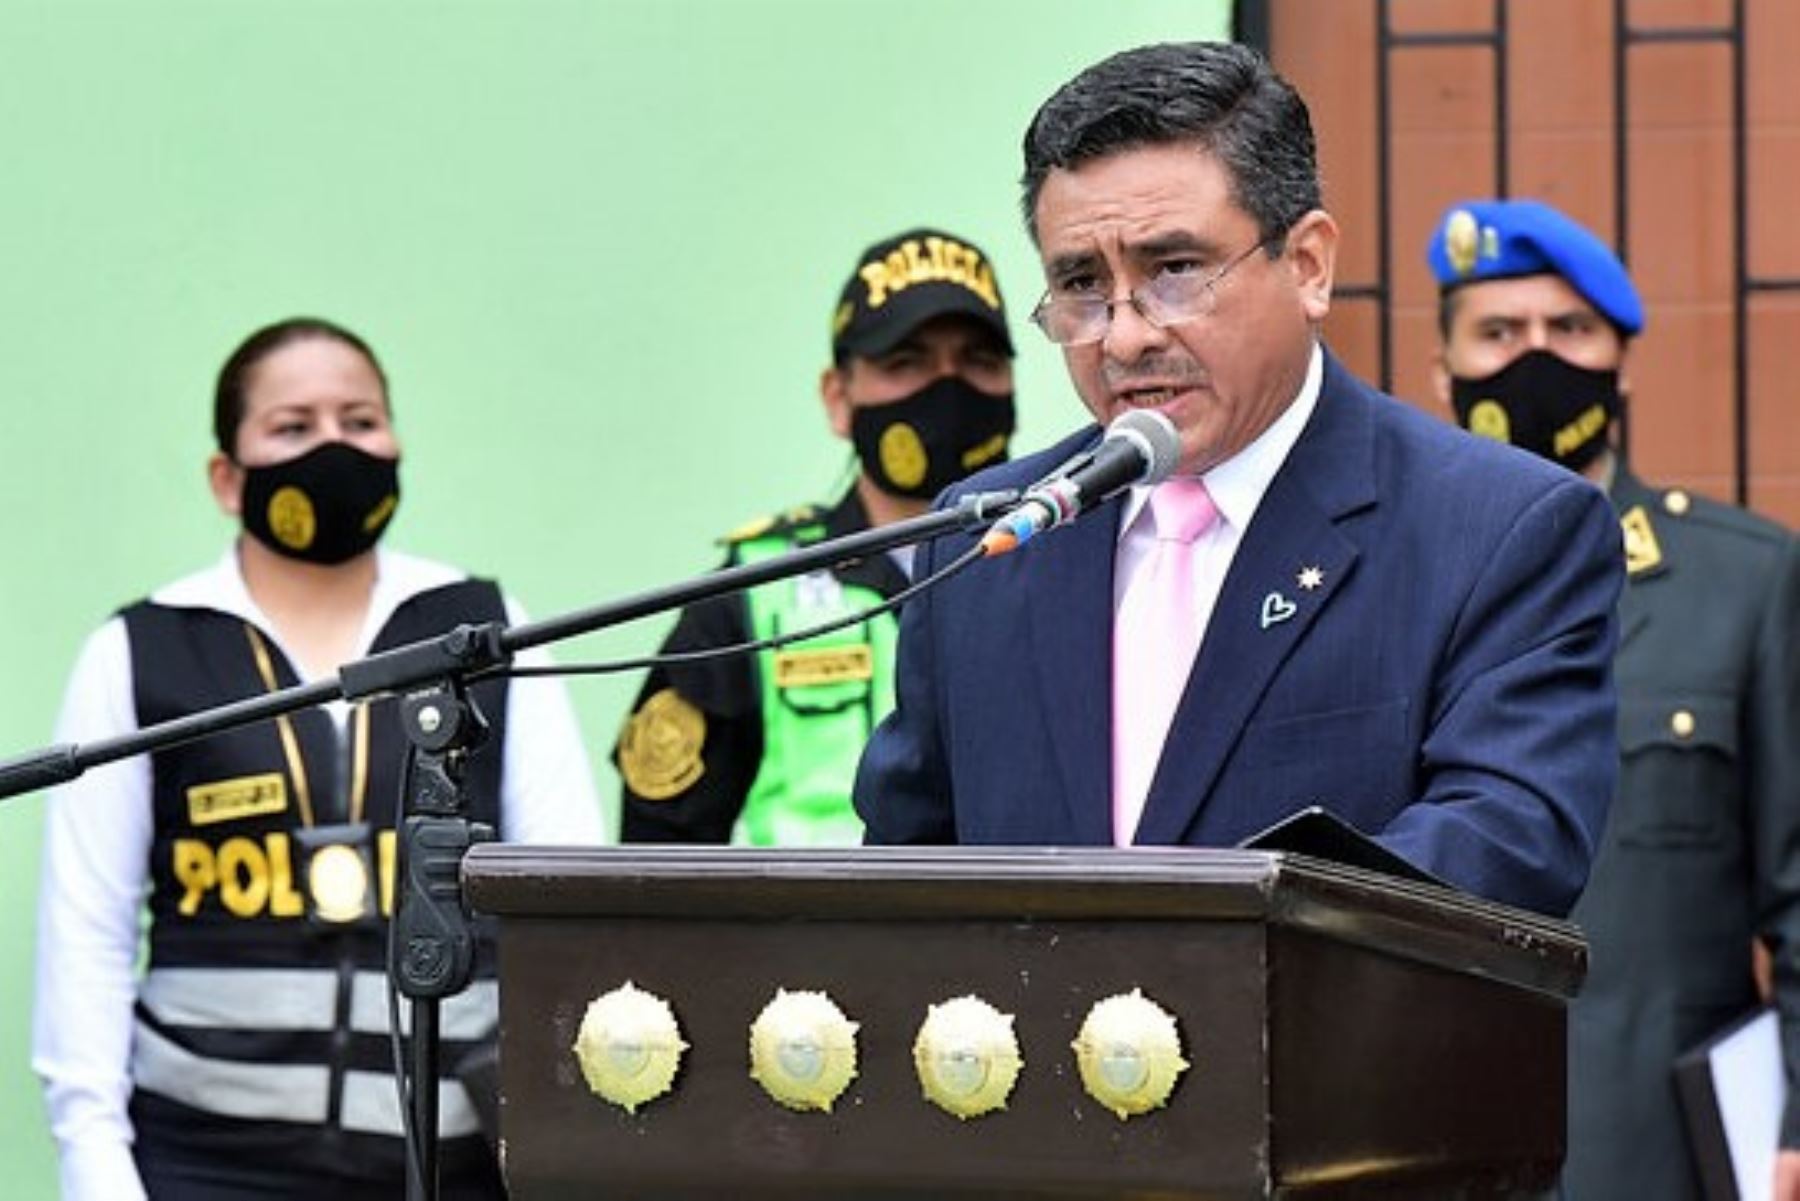 El ministro del Interior, Willy Huerta, participa en la ceremonia por el 17 aniversario de la Dirección de Tránsito, Transporte y Seguridad Vial de la PNP. Foto: Mininter.